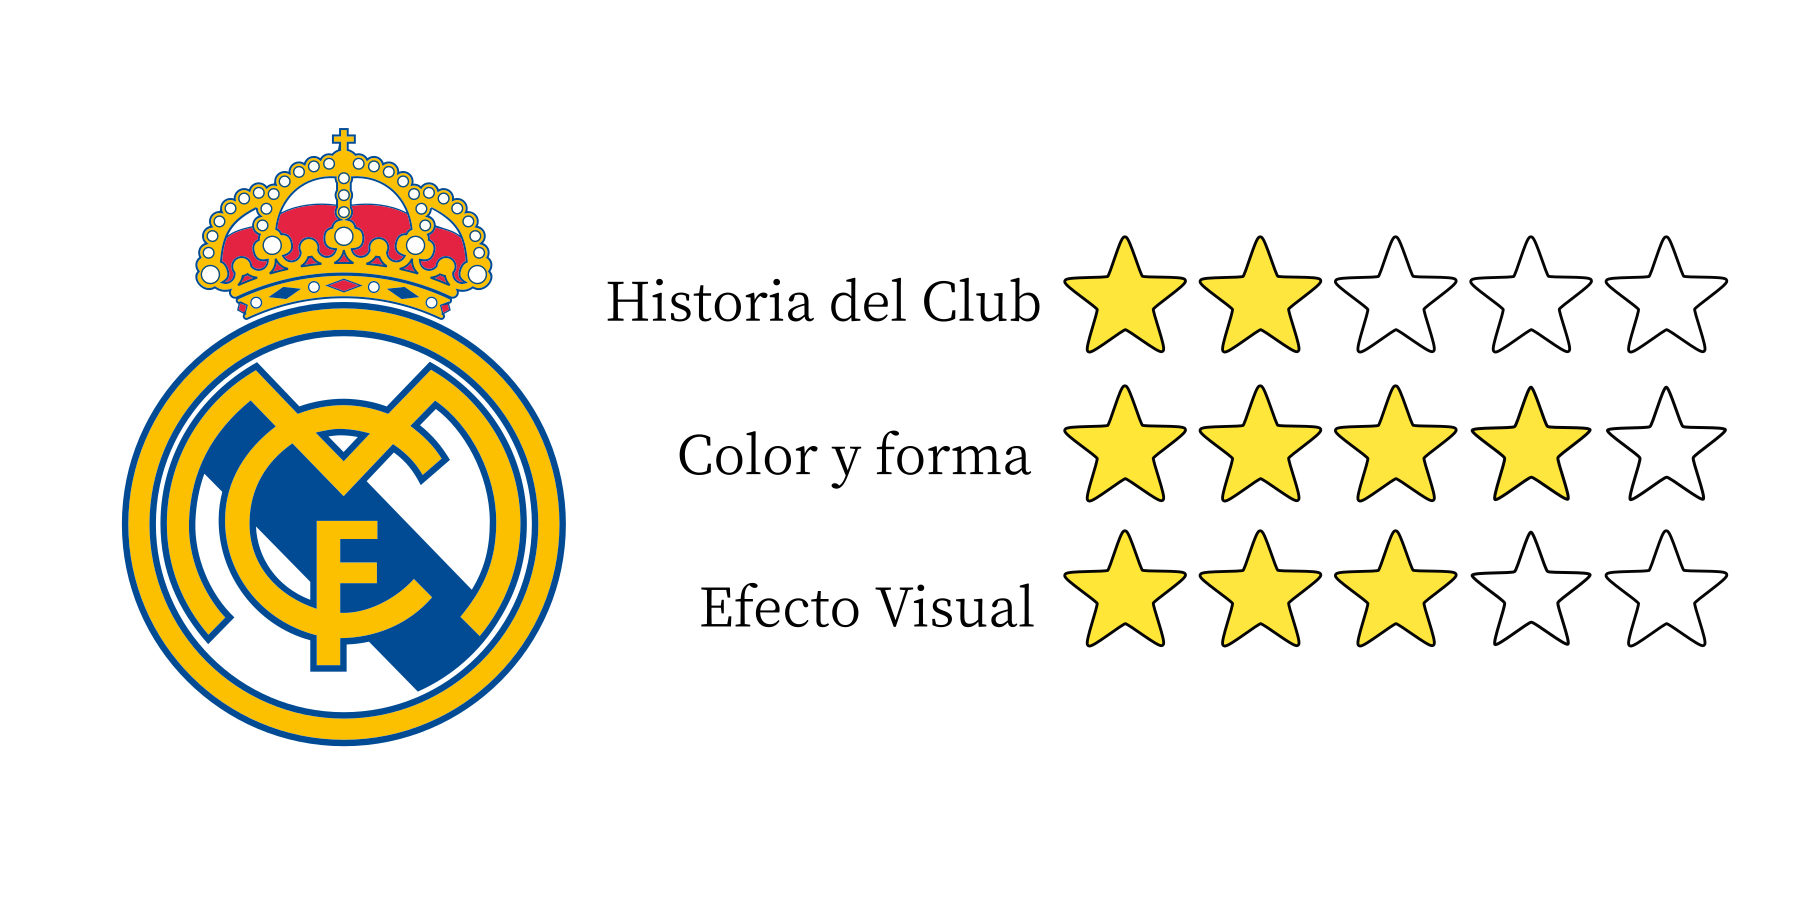 Análisis del escudo del Real Madrid (parte 10 de 10) – GilGeiger Creative